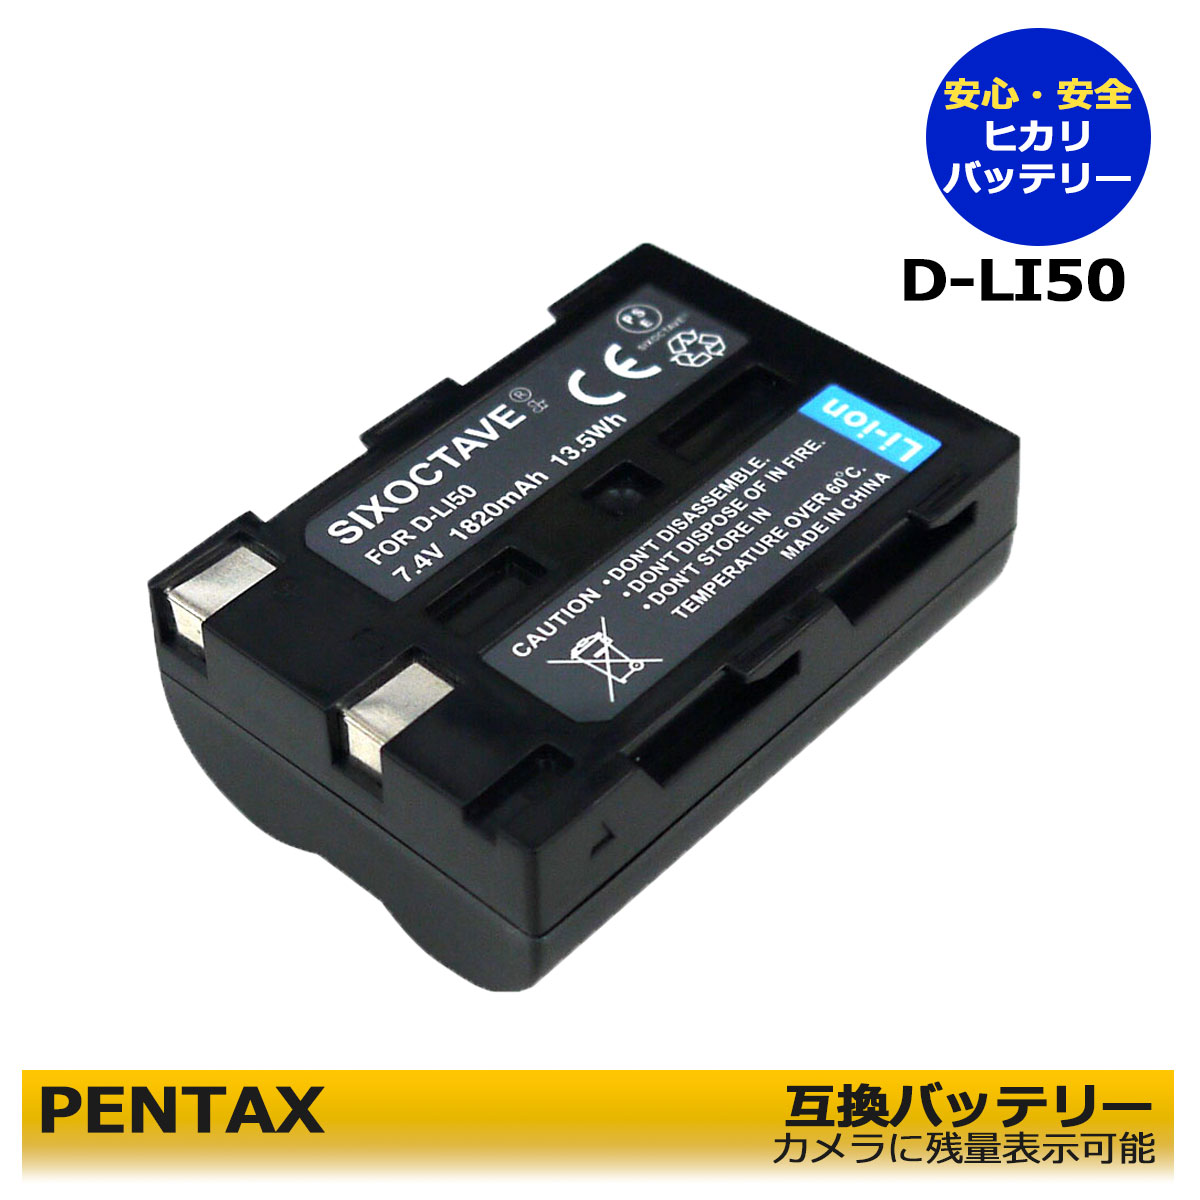 [SIXOCTAVE] ペンタックス D-Li50 コニカミノルタ NP-400 互換バッテリー 純正充電器で充電可能 残量表示可能 純正品と同じ